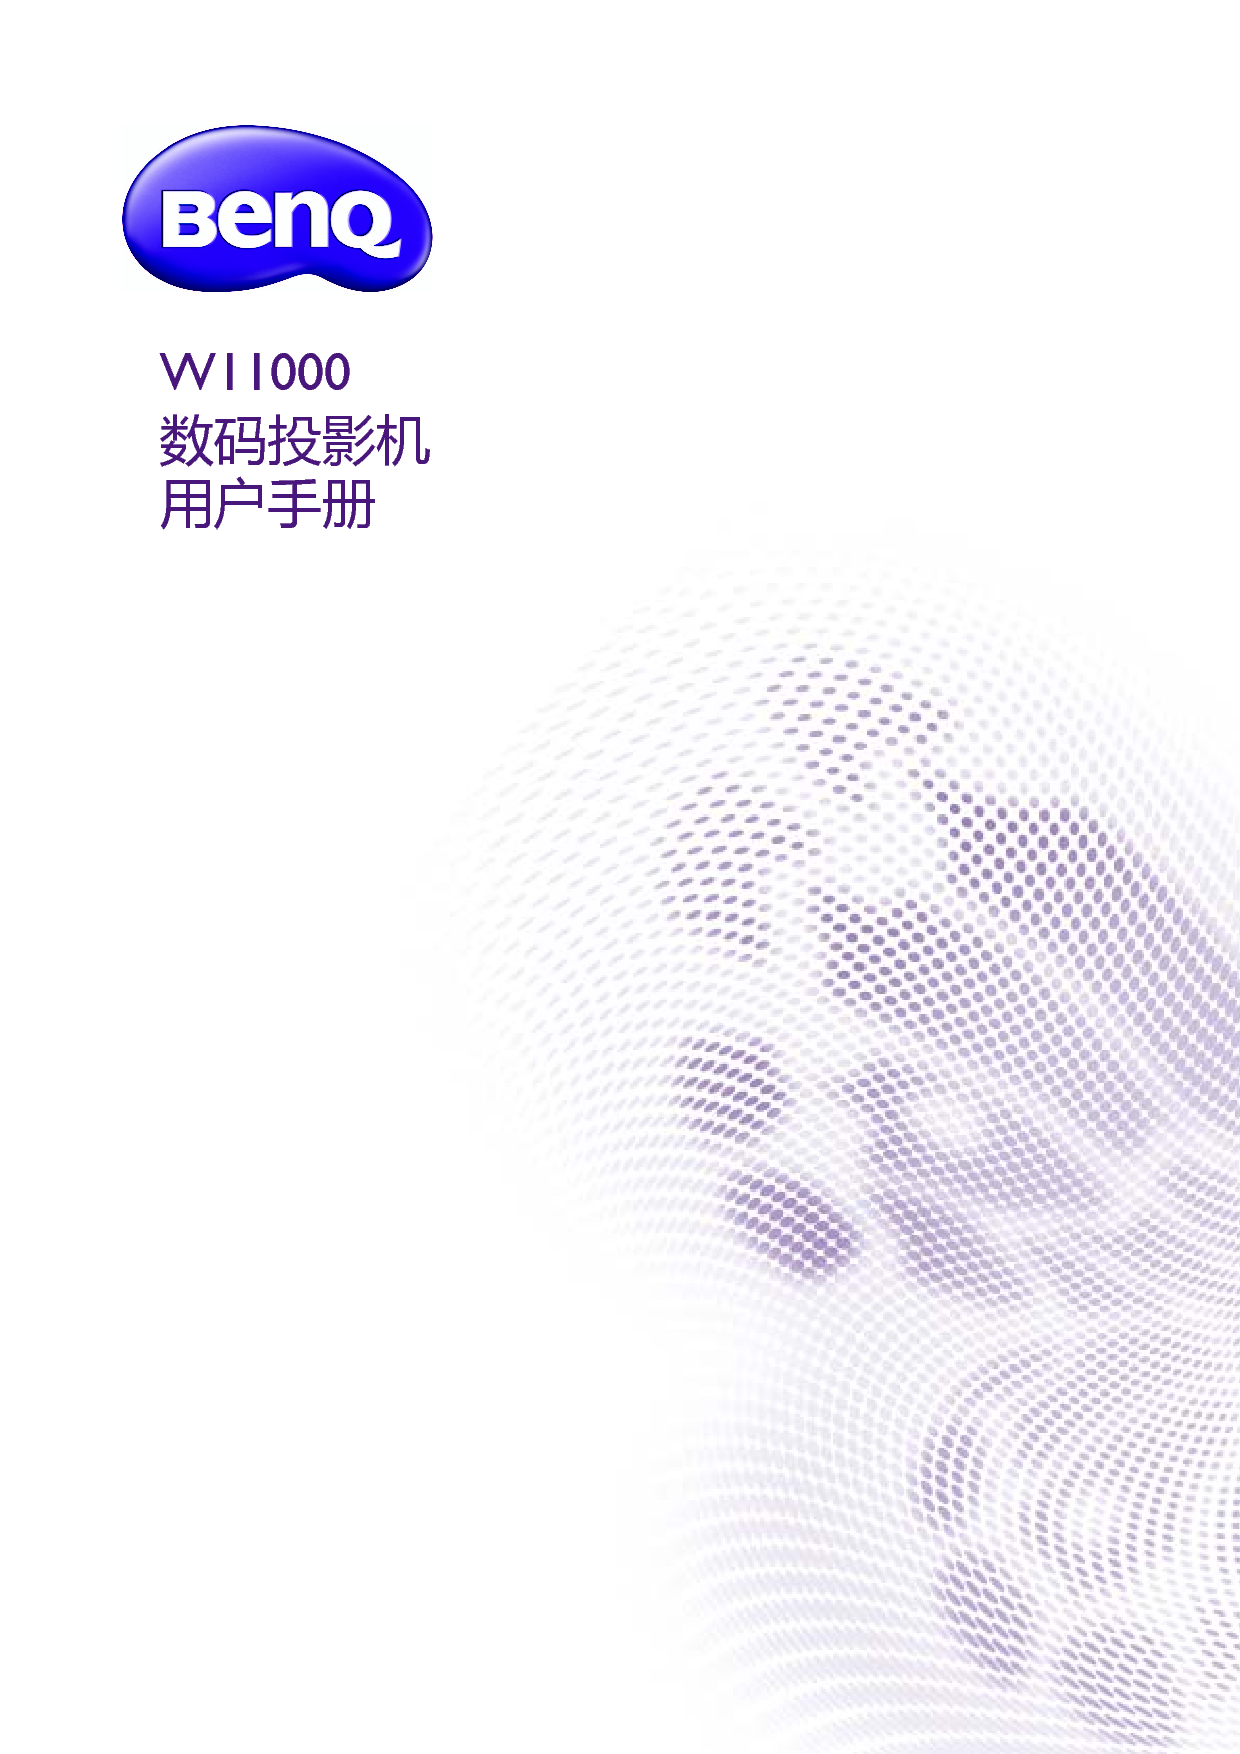 明基 Benq W11000 用户手册 封面